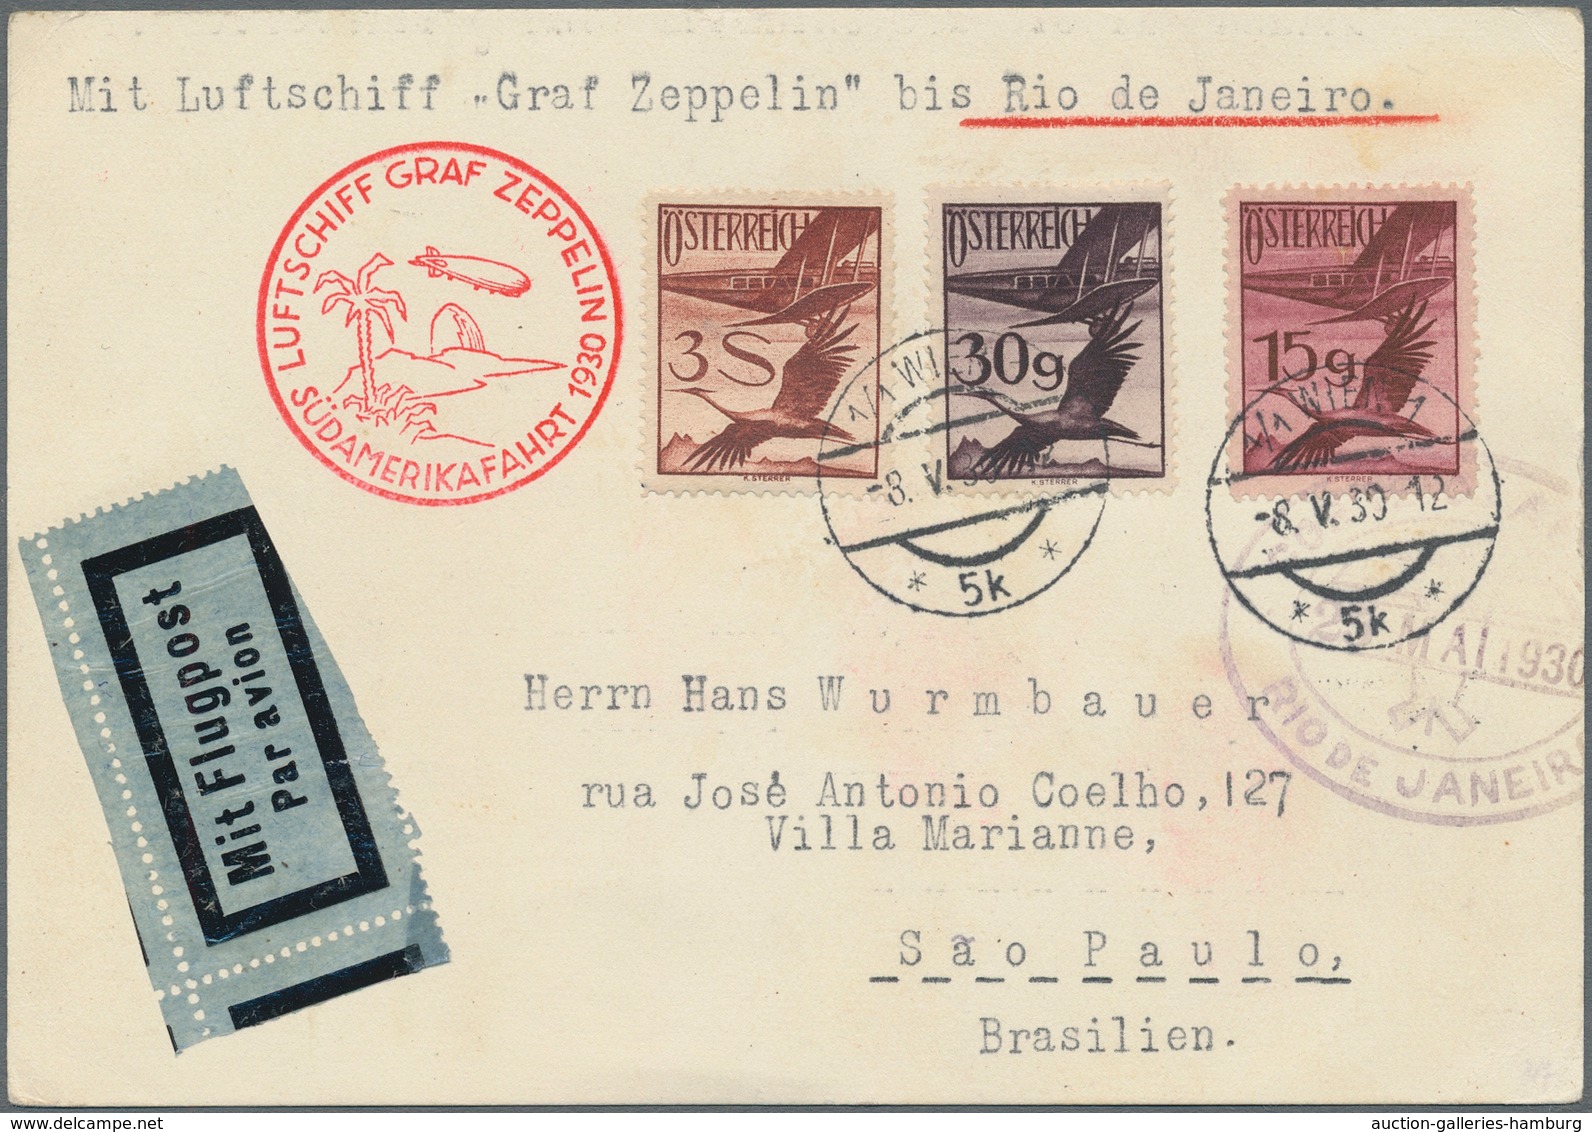 Zeppelinpost Europa: 1930, Südamerikafahrt, Österreichische Post, Karte Mit Dekorativer Flugpost-Fra - Autres - Europe